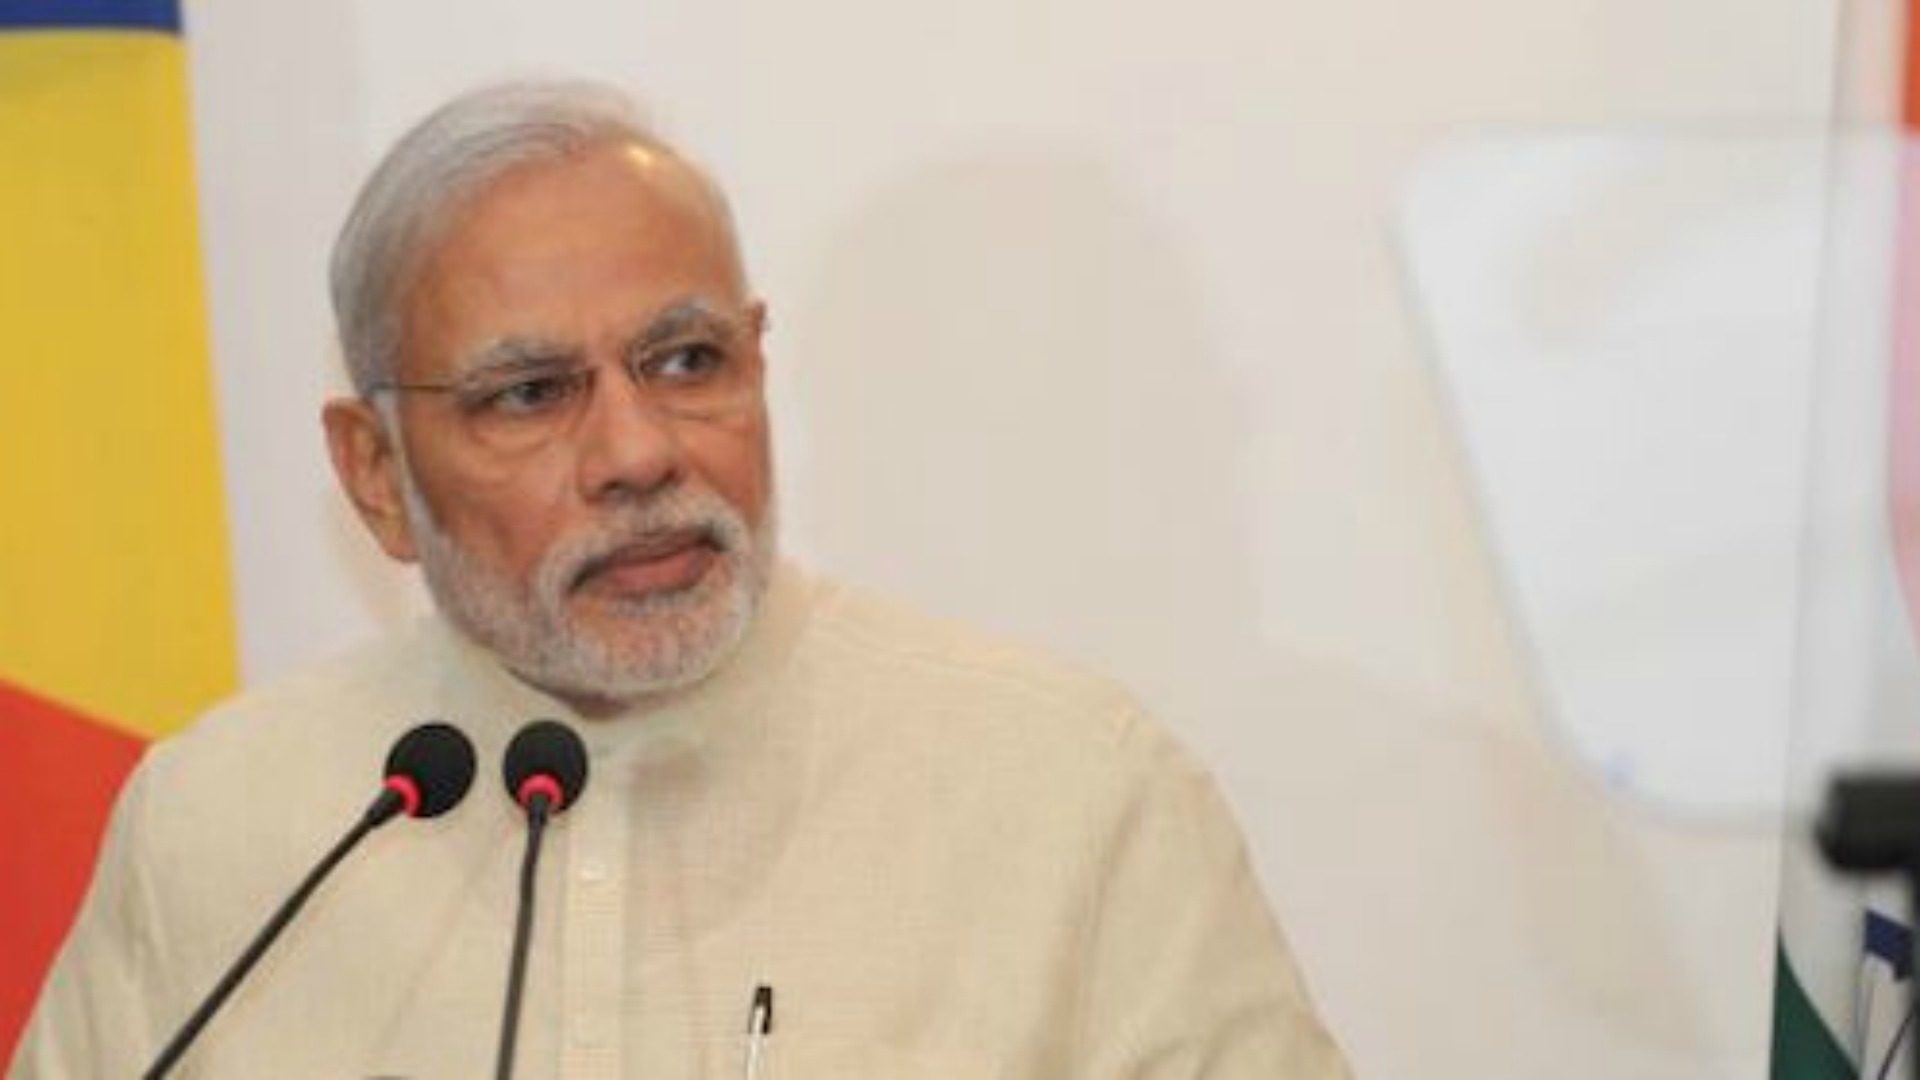 Le Premier ministre indien Narendra Modi  suit la ligne nationaliste hindoue (Photo:  Wikimedia Commons)